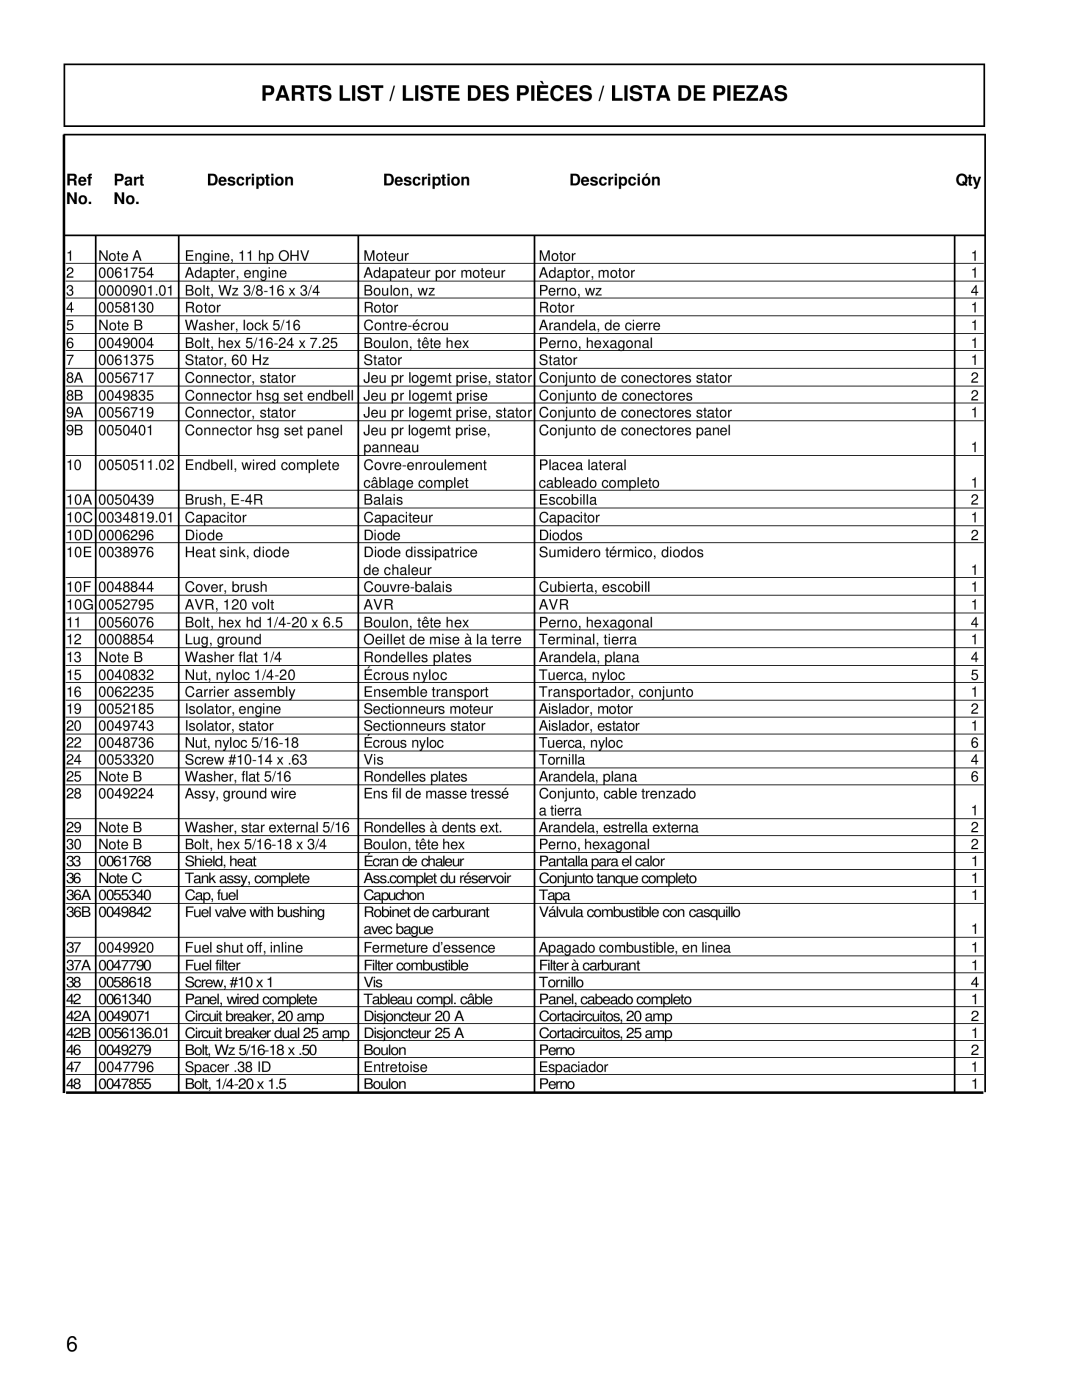 Powermate PC0525300.18 manual Parts List / Liste Des Pièces / Lista De Piezas, Description, Descripción 